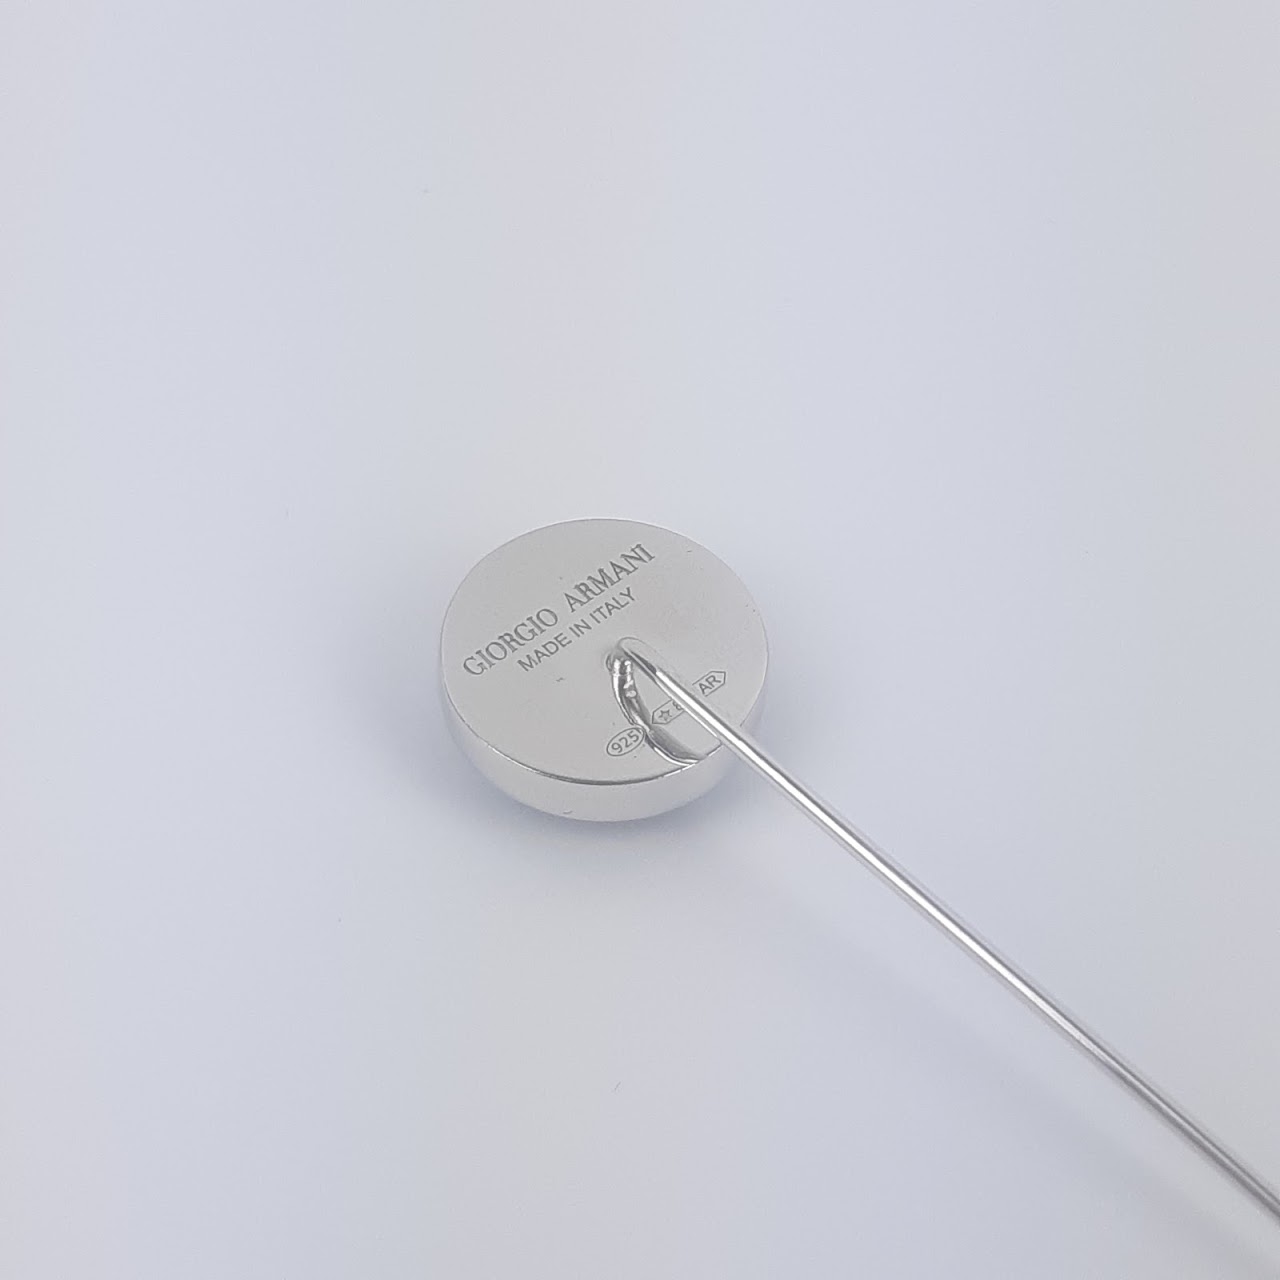 Giorgio Armani Sterling Silver & Embroidered Tie Pin